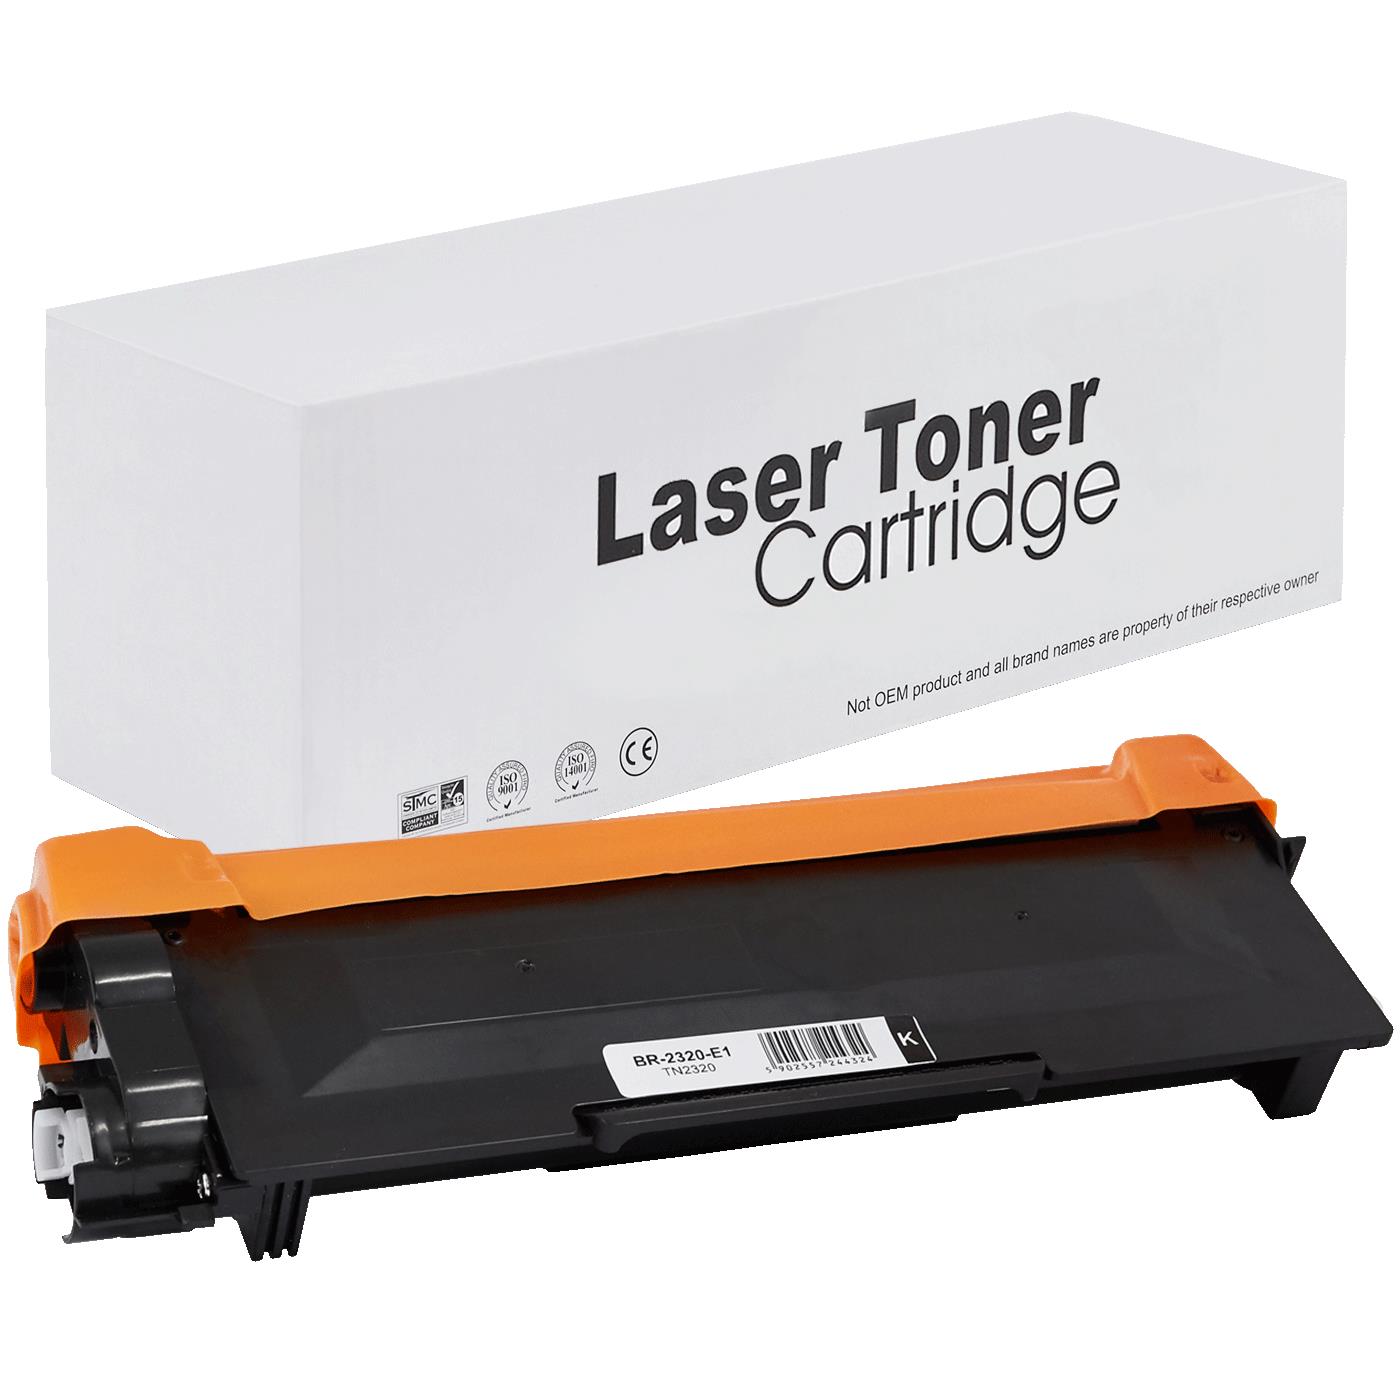 съвместима тонер касета за принтери и печатащи устройства на Brother HL-L 2340 DW Toner BR-2320 | TN2320 / TN2310 / TN-2320. Ниски цени, прецизно изпълнение, високо качество.